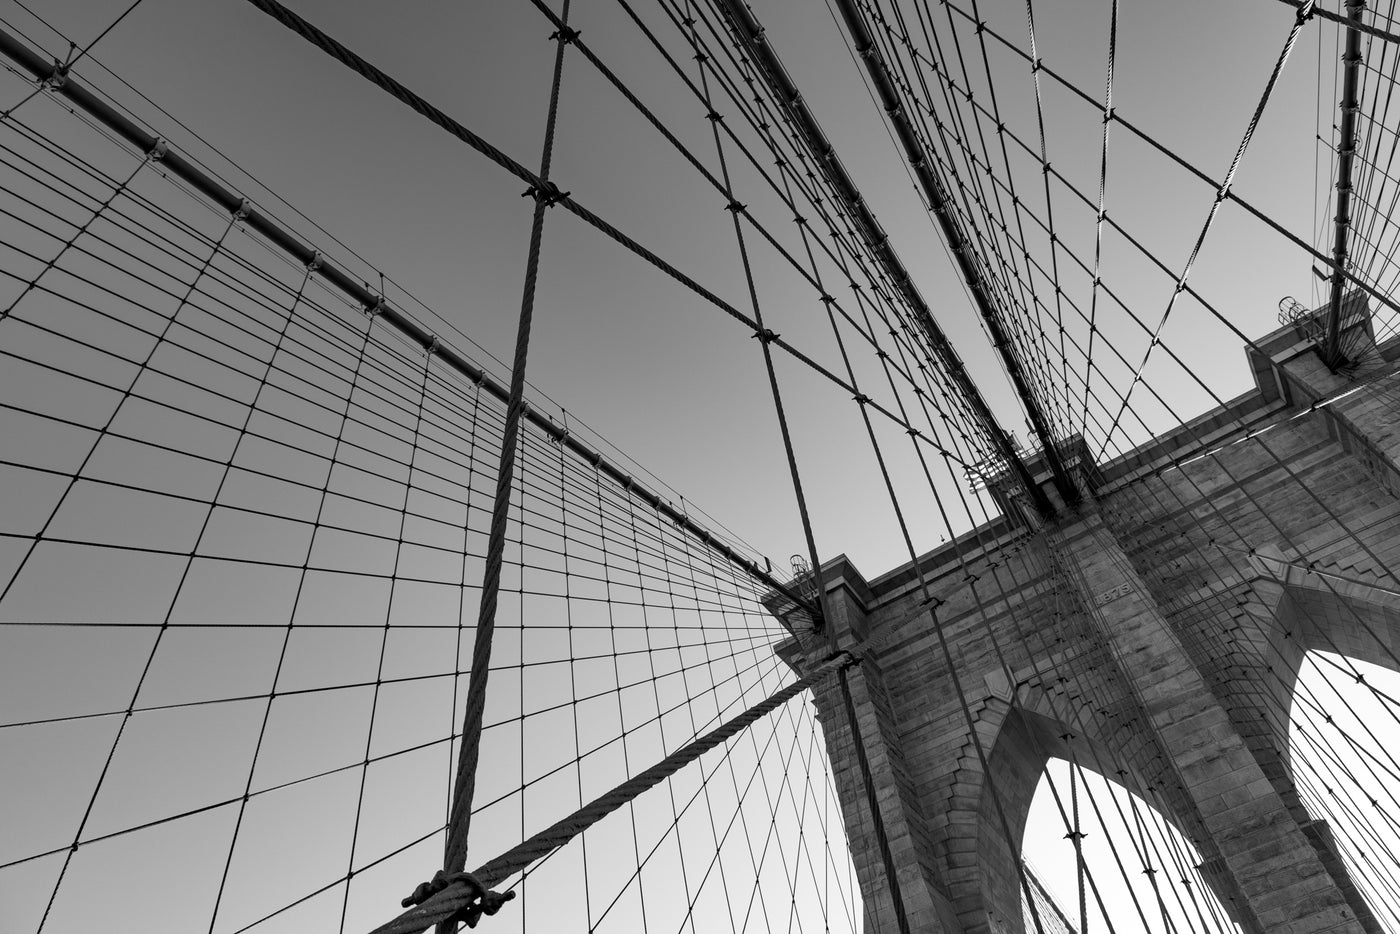 Brooklyn Bridge looking up